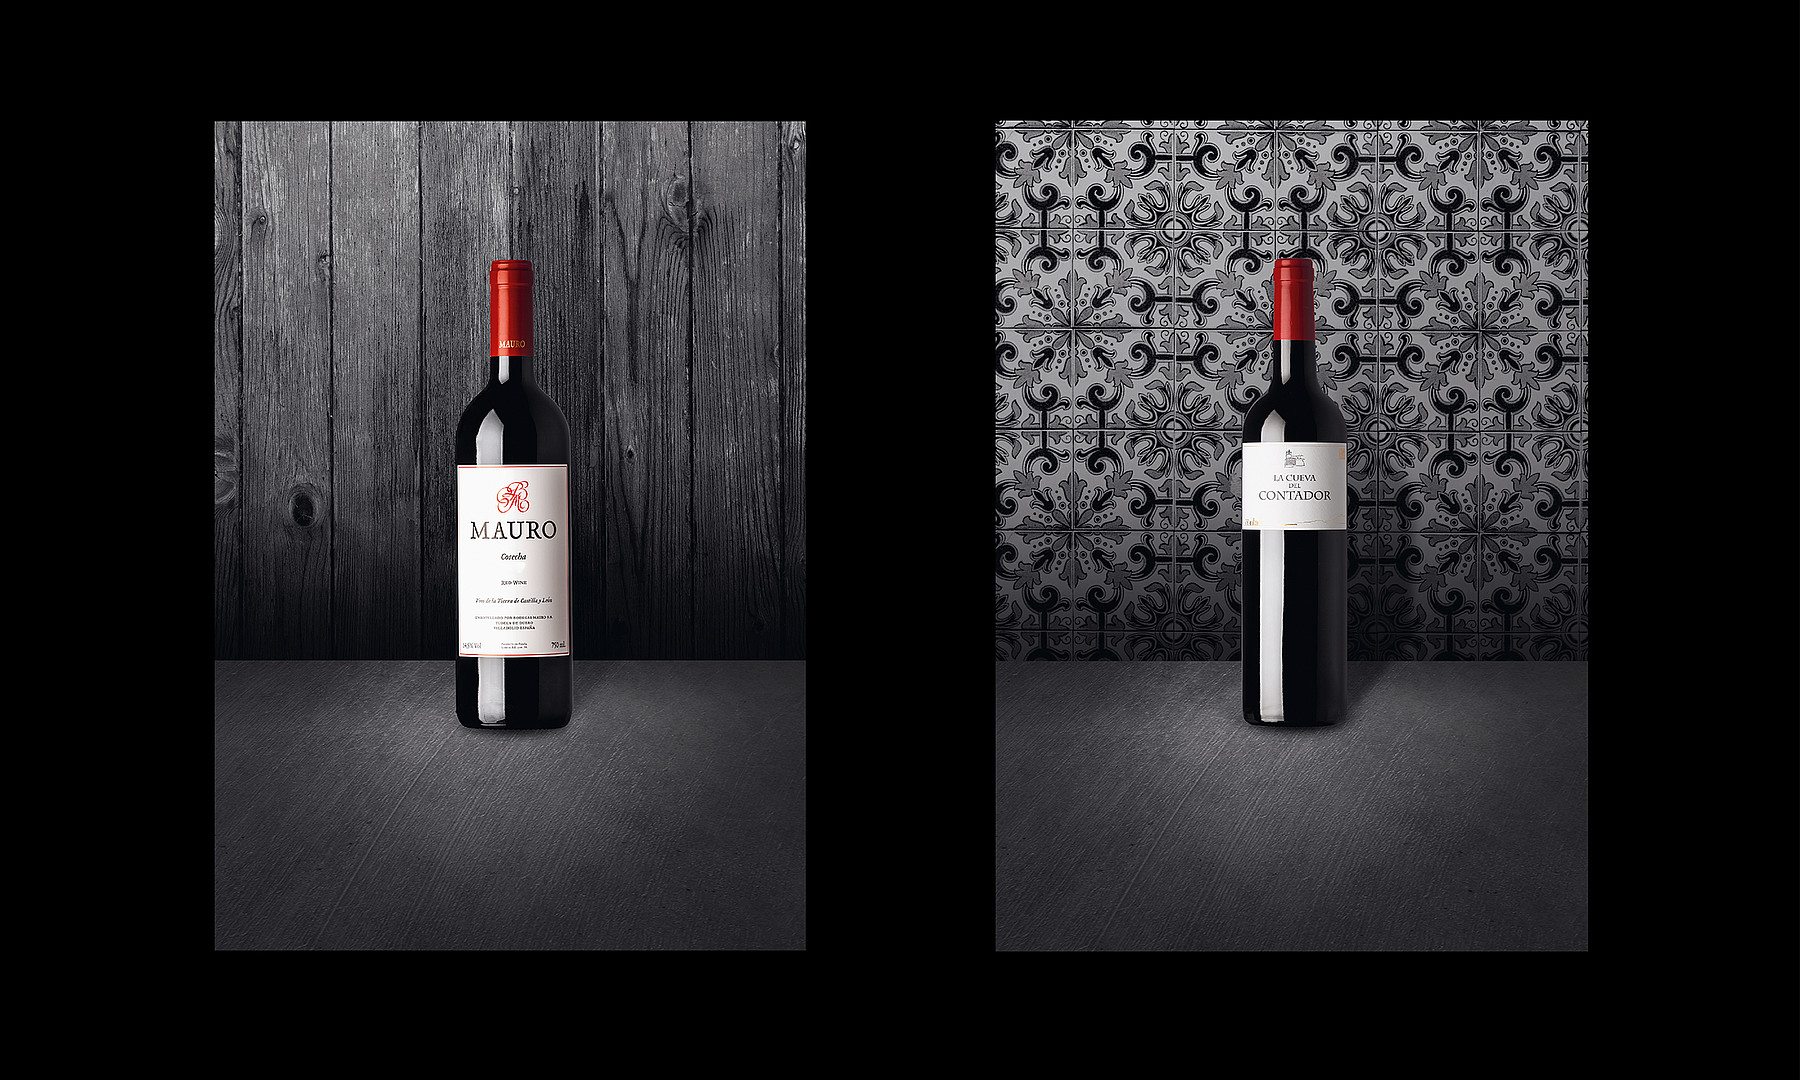 Zwei Flaschen Rotwein vor grauem Hintergrund